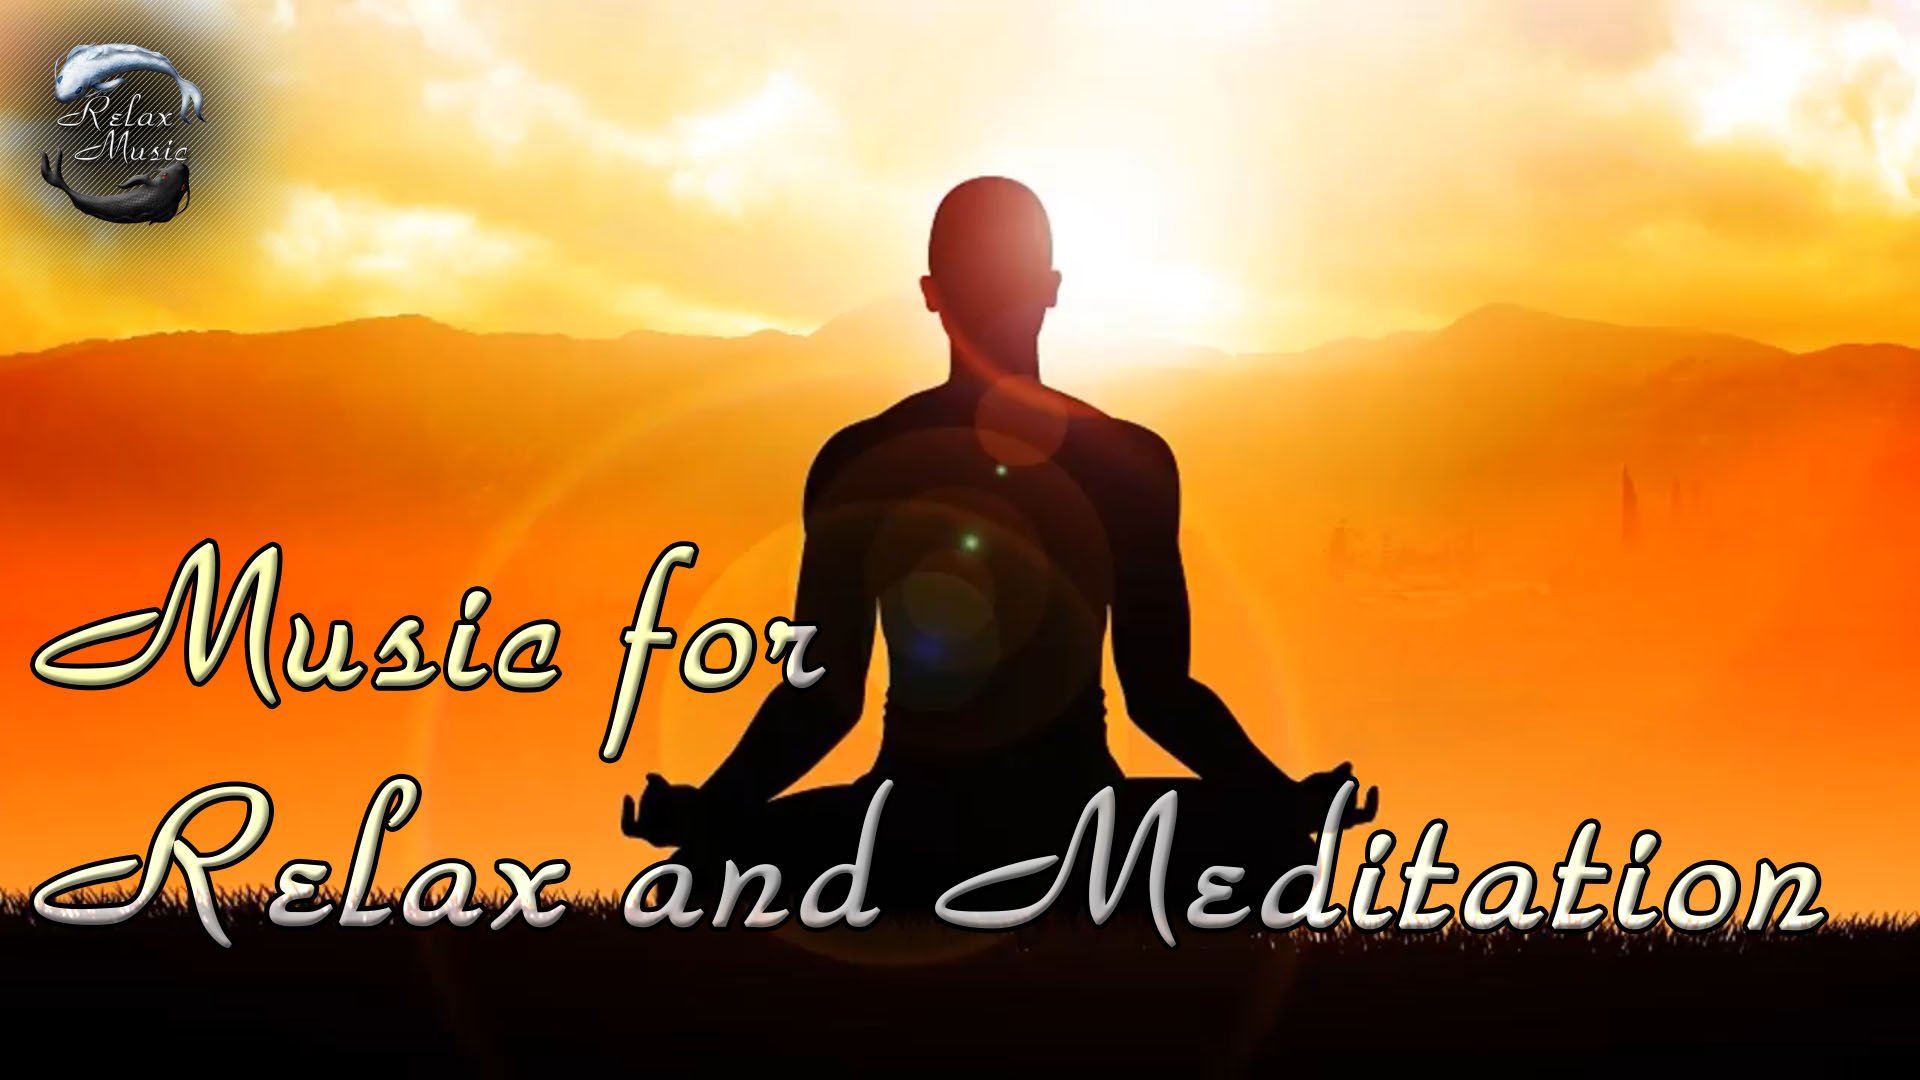 Звуки природы для медитации. Медитация музыка без слов. Музыка для медитации. Музыка для медитации 15 минут. Музыка для медитации шум